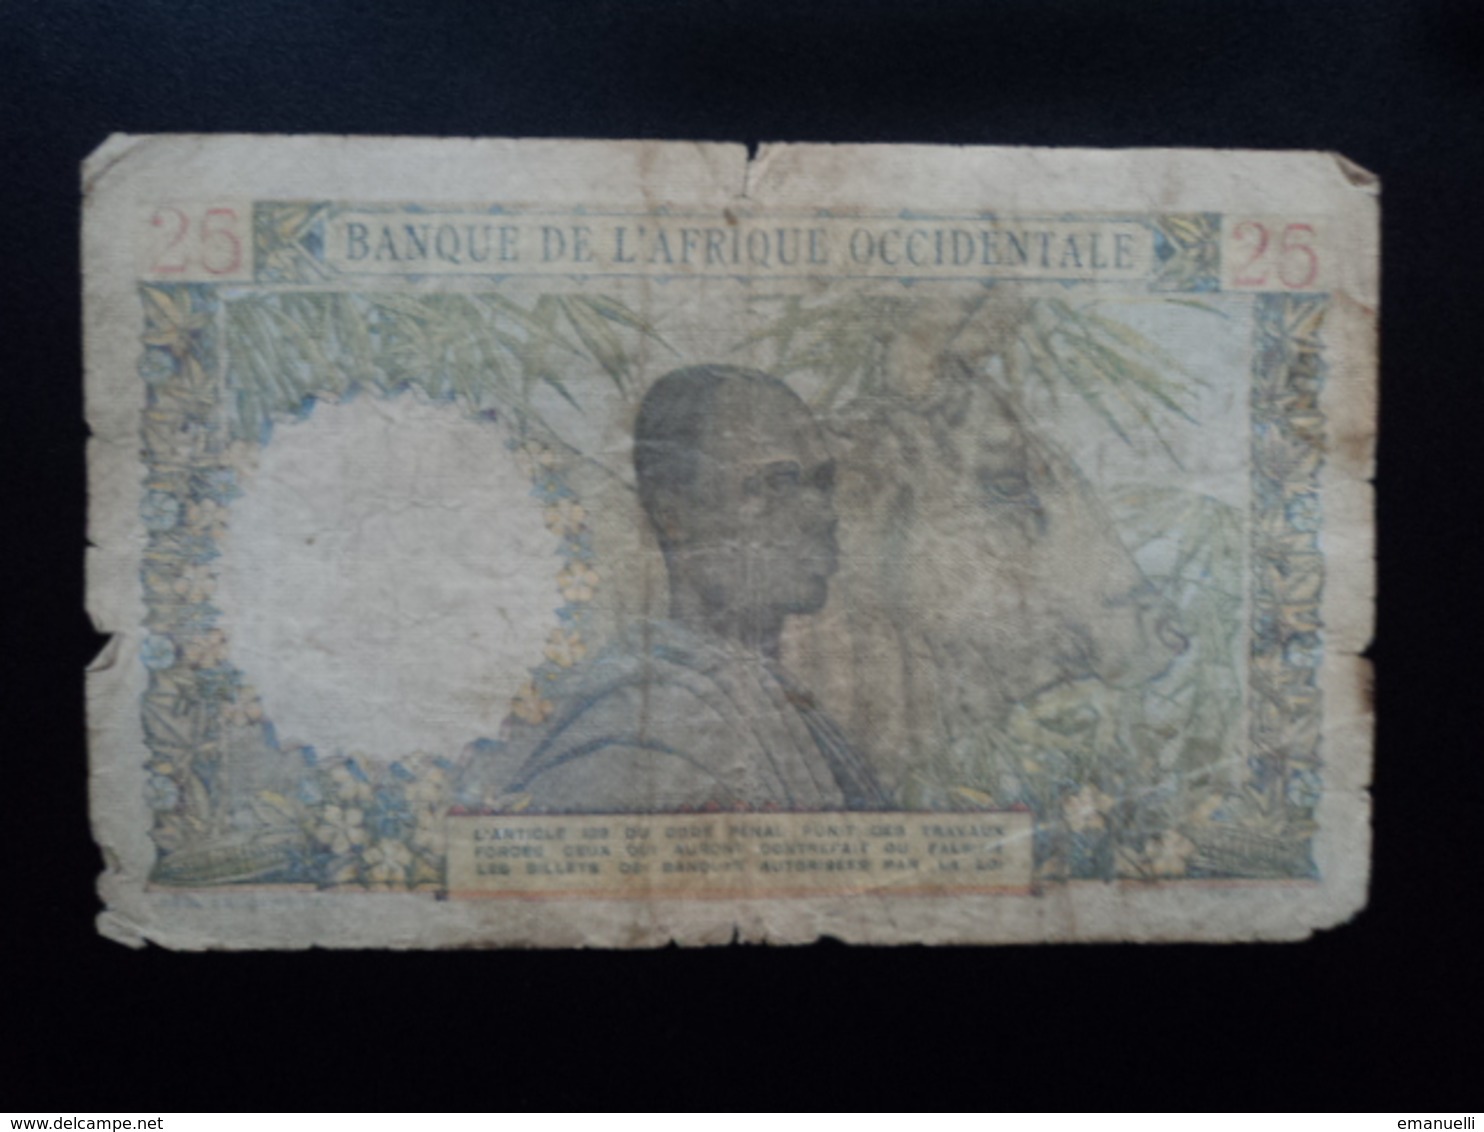 AFRIQUE OCCIDENTALE FRANCAISE : 25 FRANCS  27.12.1948  P 38   état B - Autres - Afrique